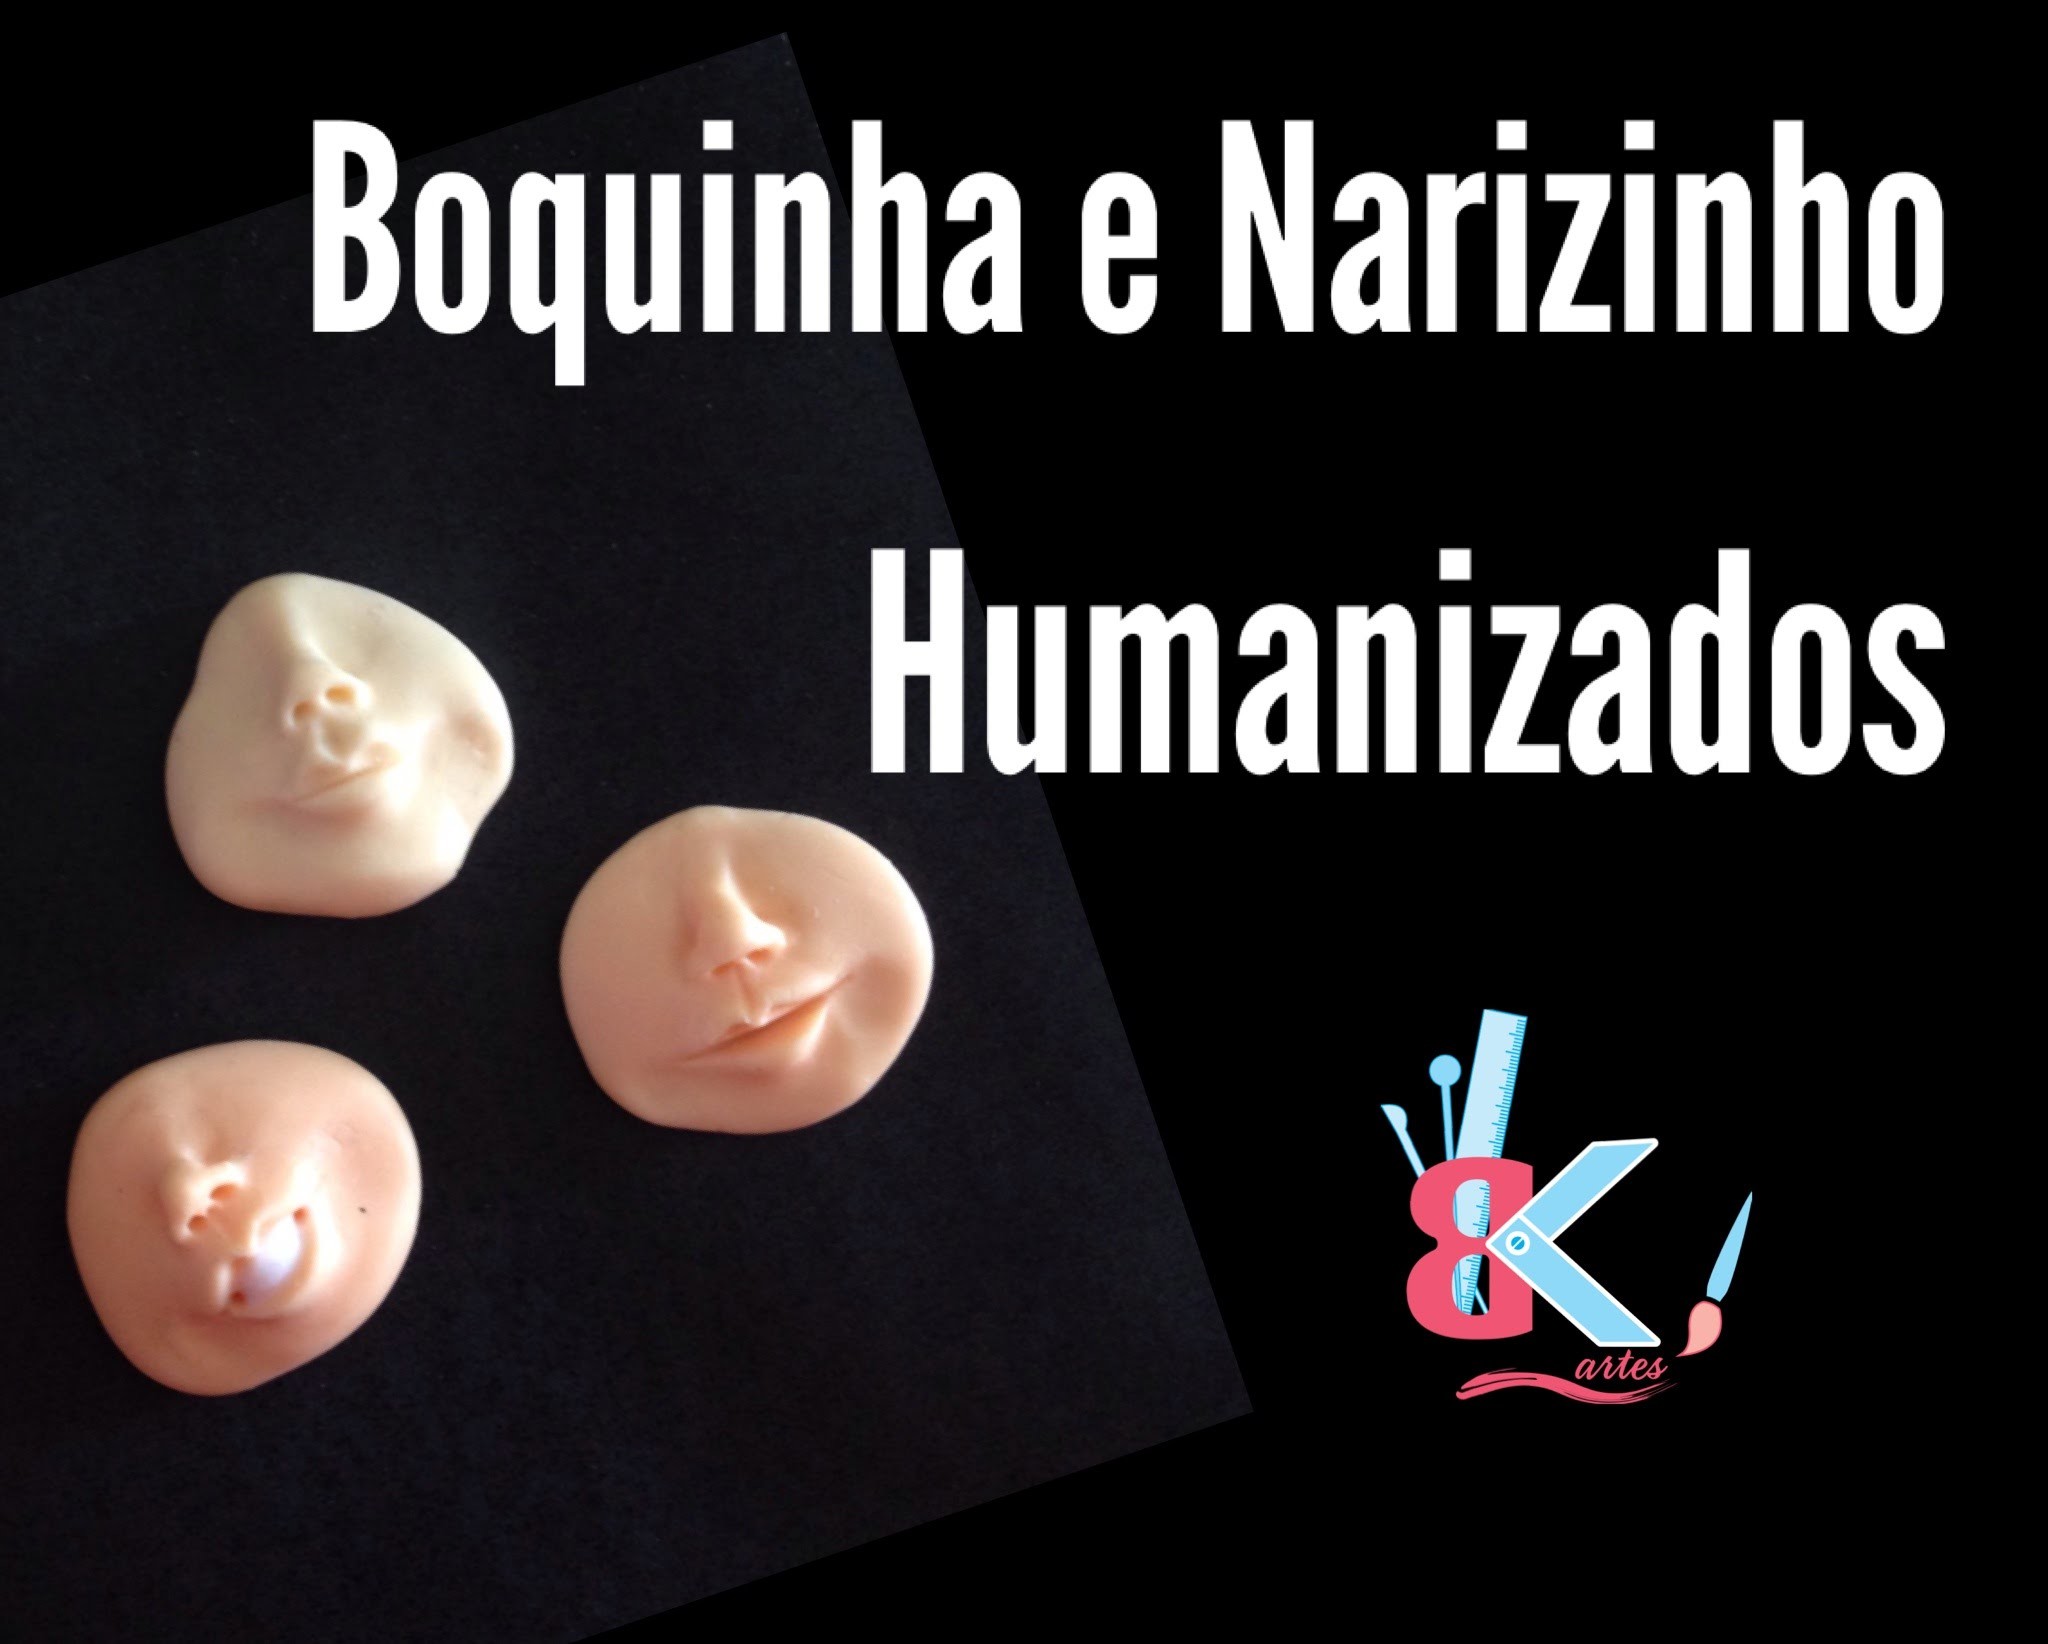 Boquinha e Narizinho humanizado - Dicas B e K artes